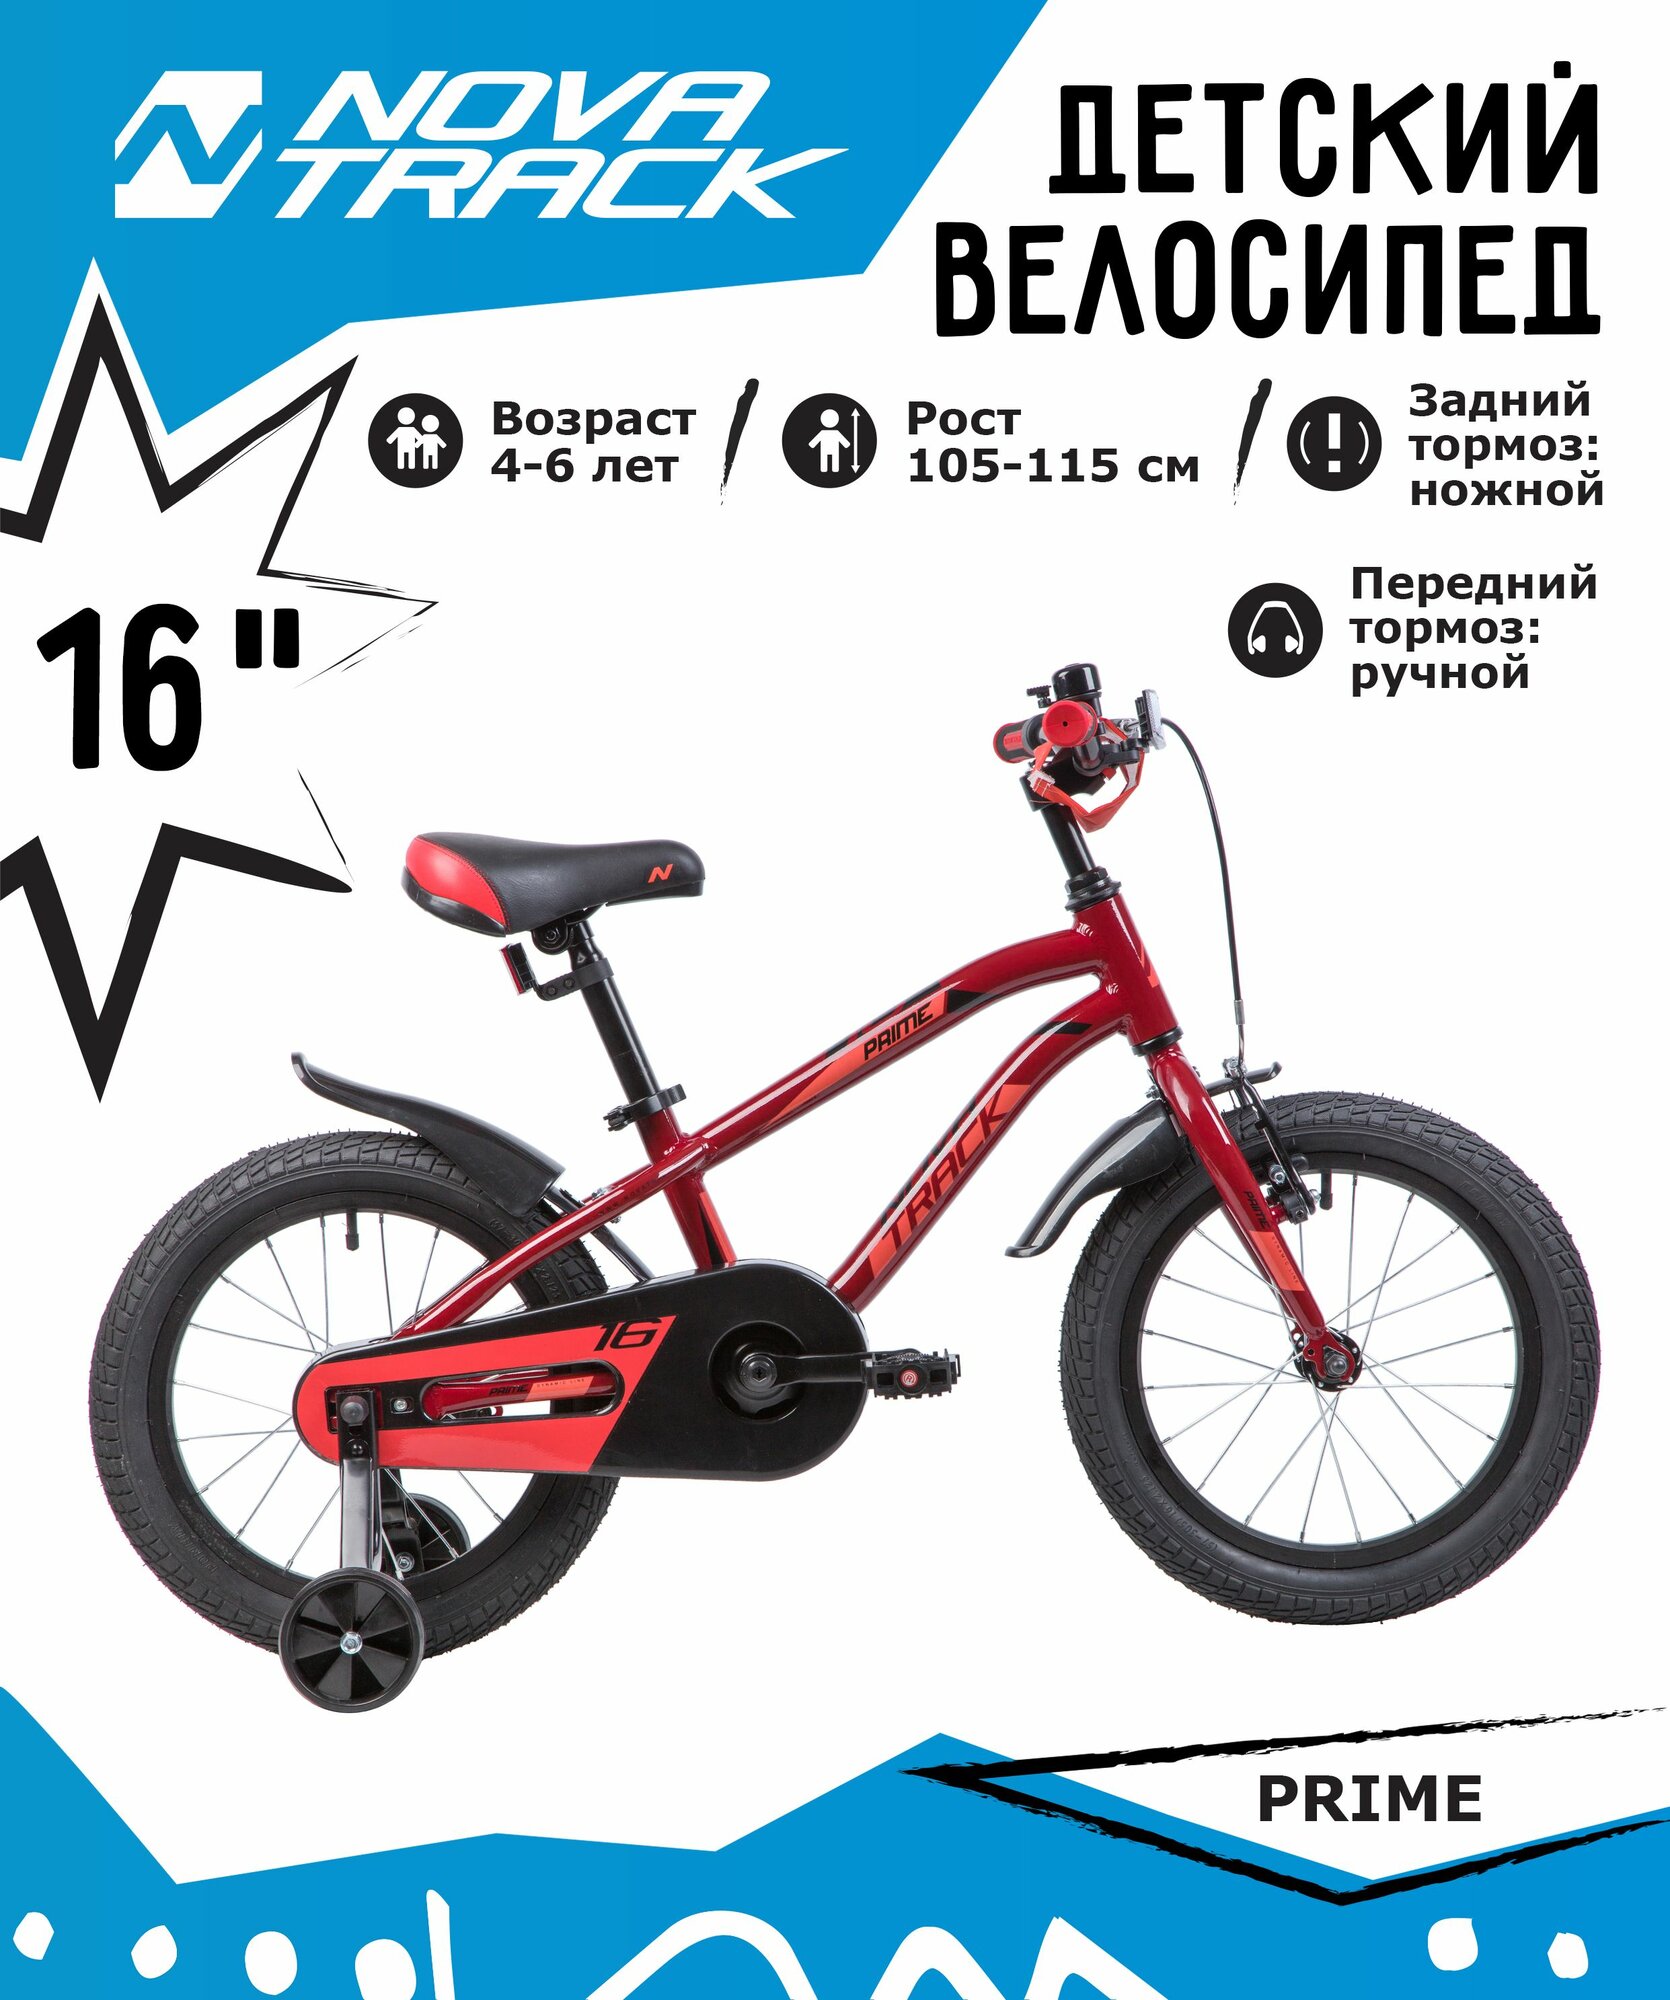 Велосипед NOVATRACK 16", PRIME AB, алюм, коричневый, полная защита цепи, передний тормоз ручной, задний ножной.